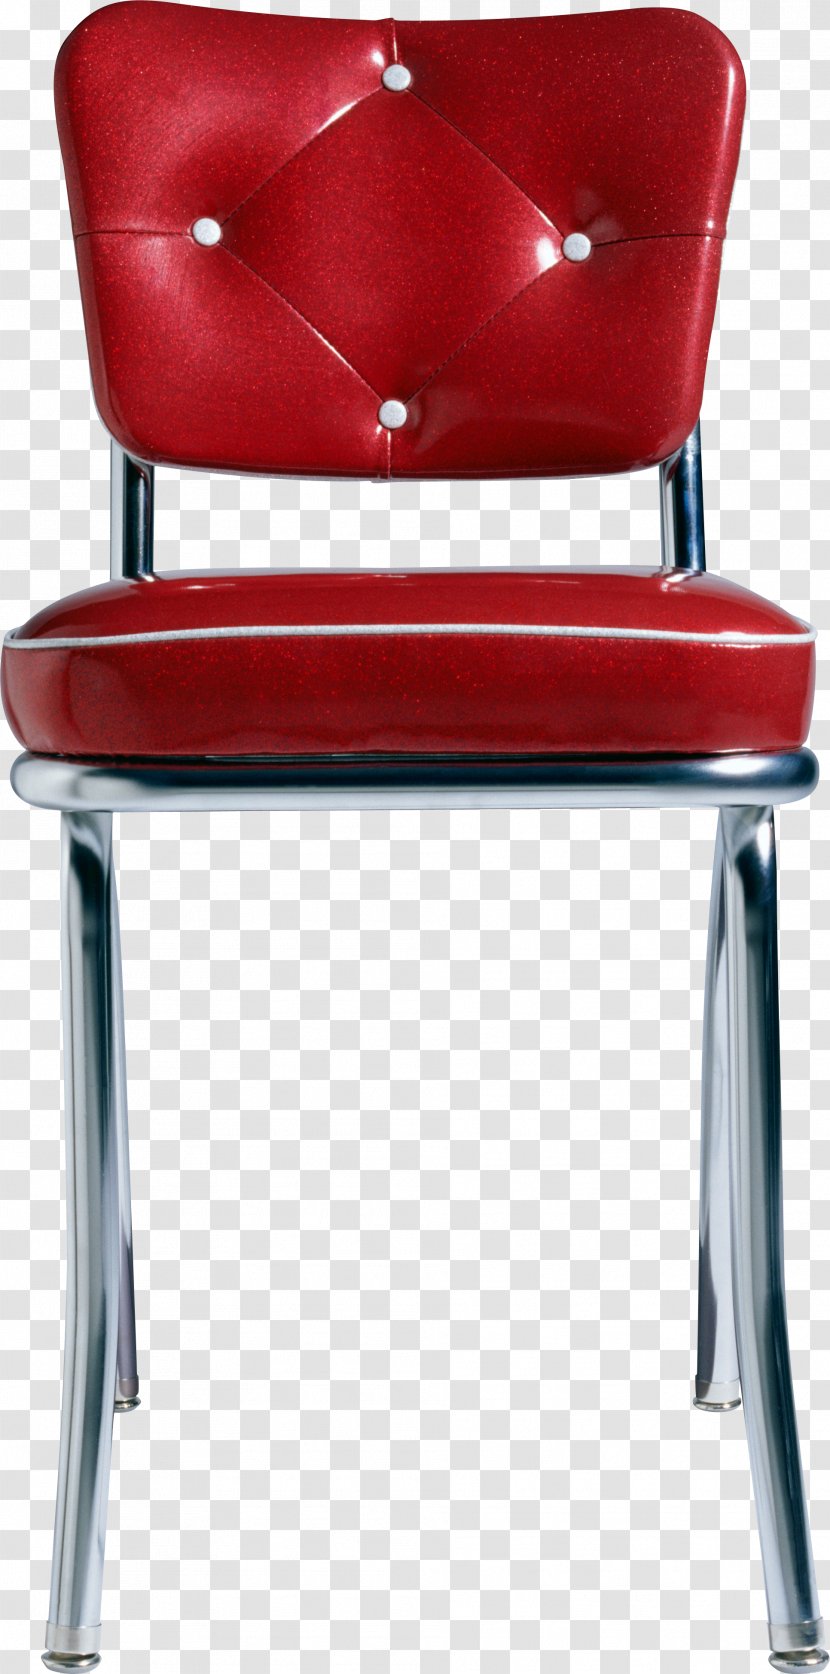 No. 14 Chair Bar Stool Transparent PNG